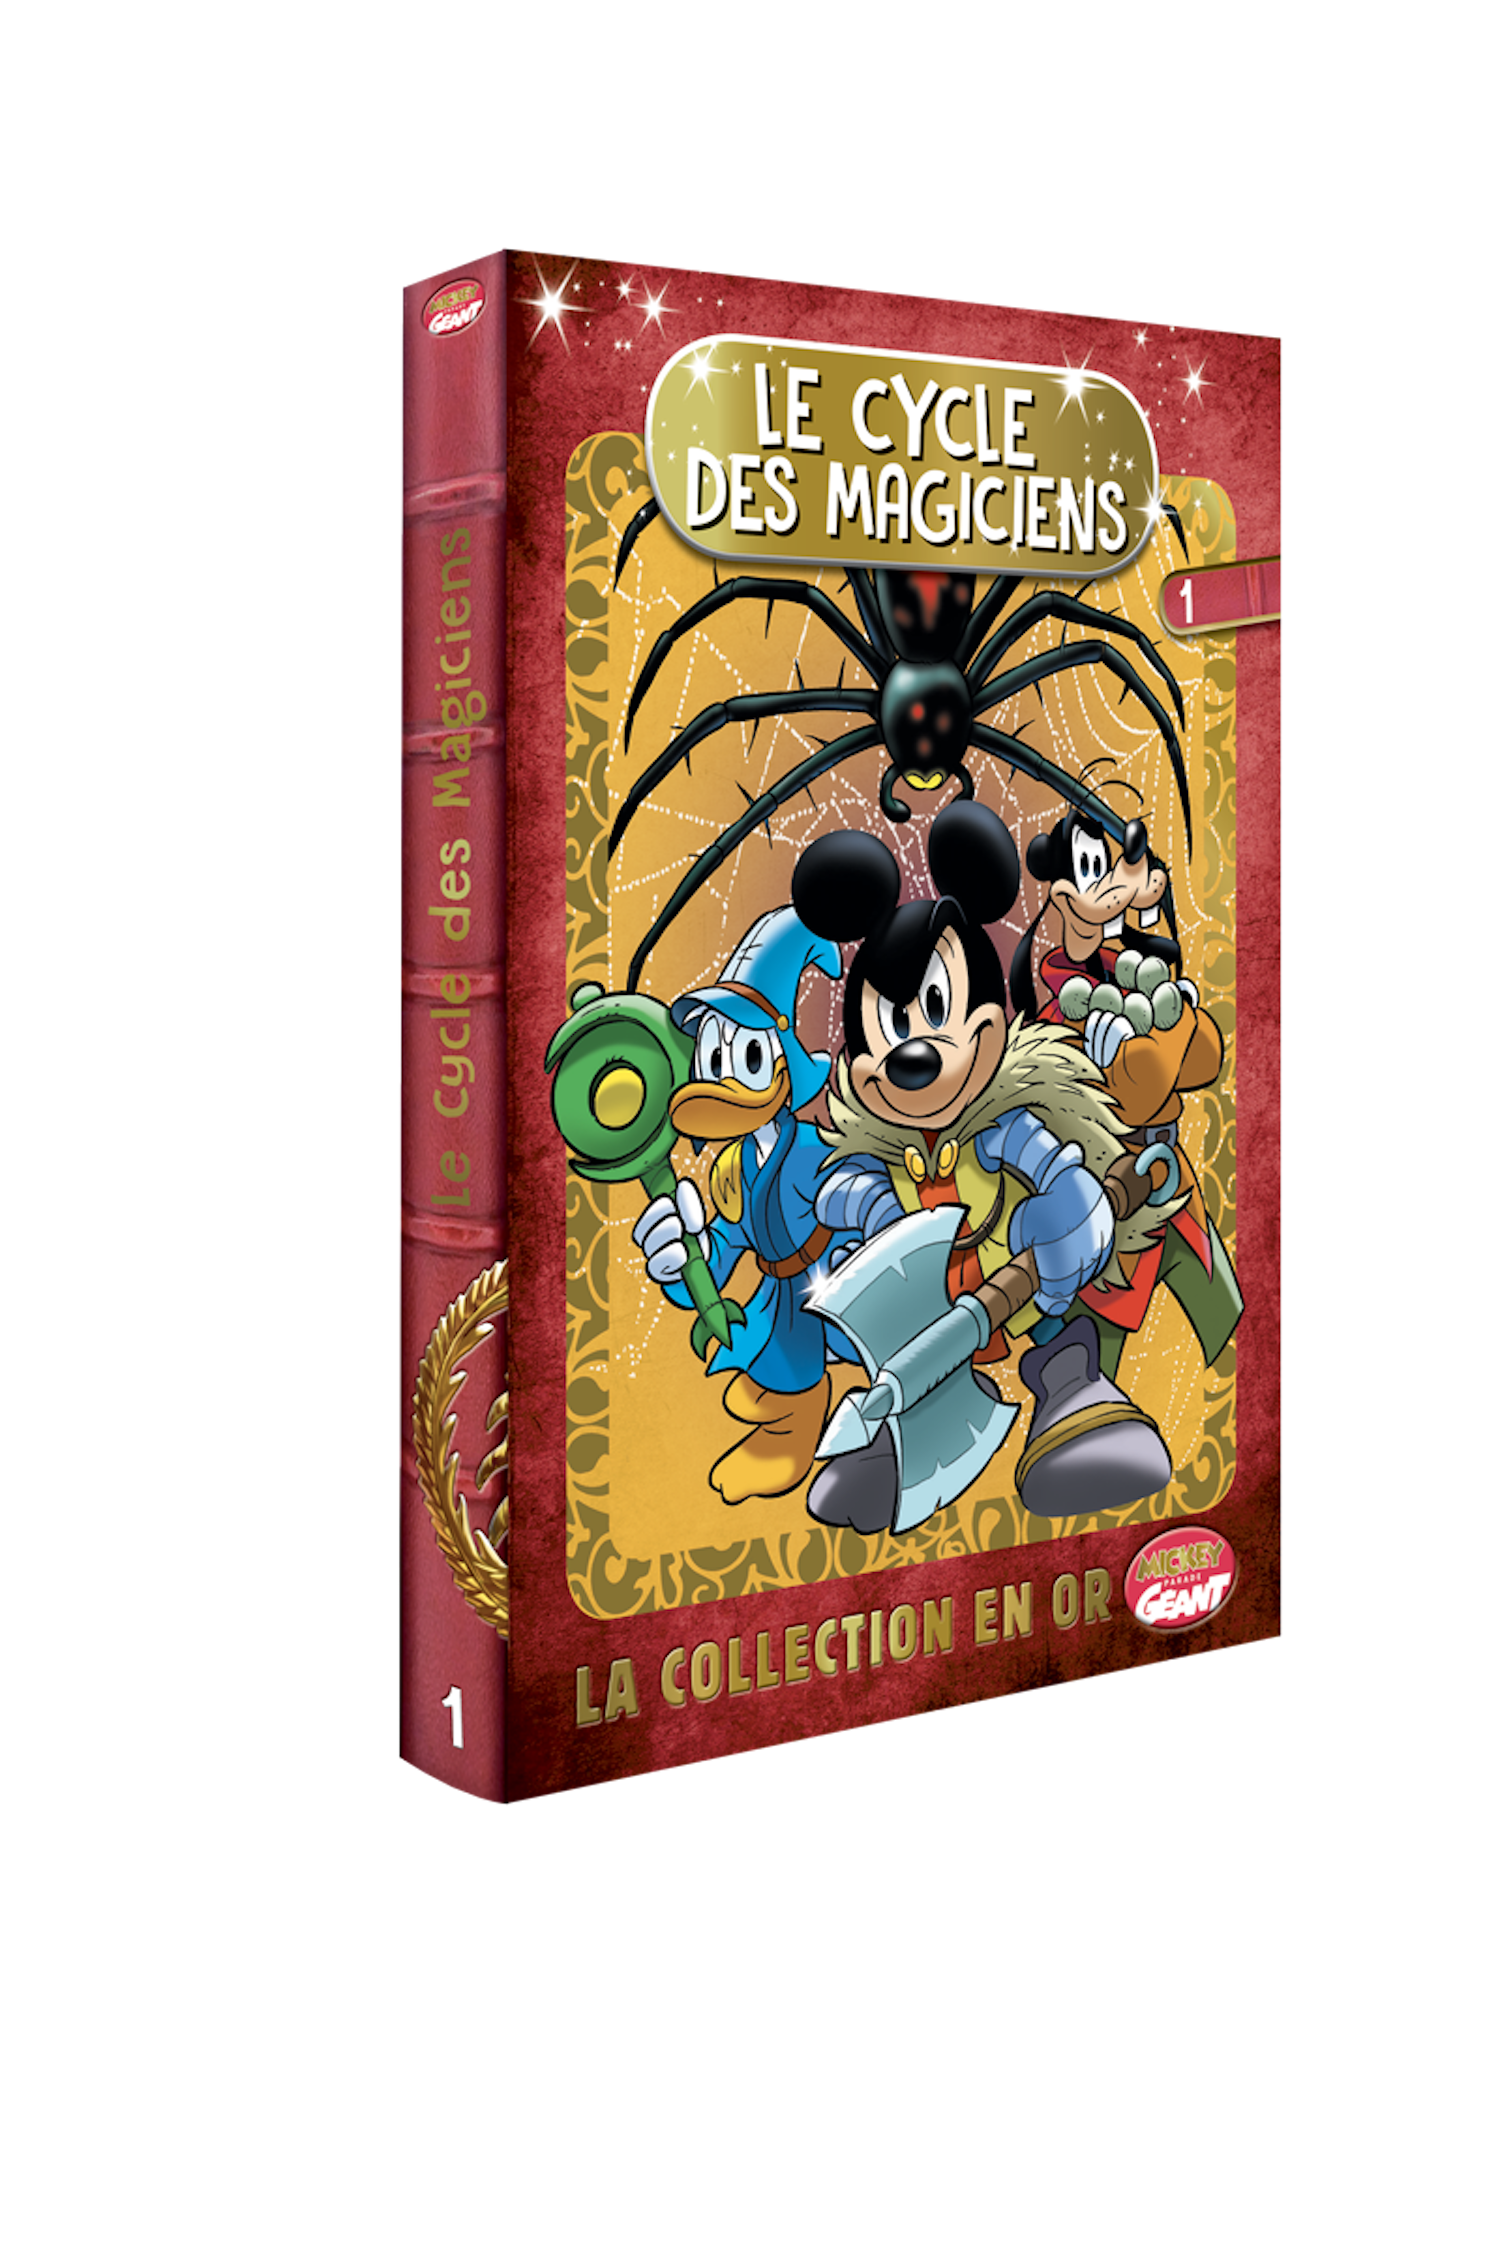 L'intégrale de la série Mickey "Le Cycle des Magiciens" arrive cet été